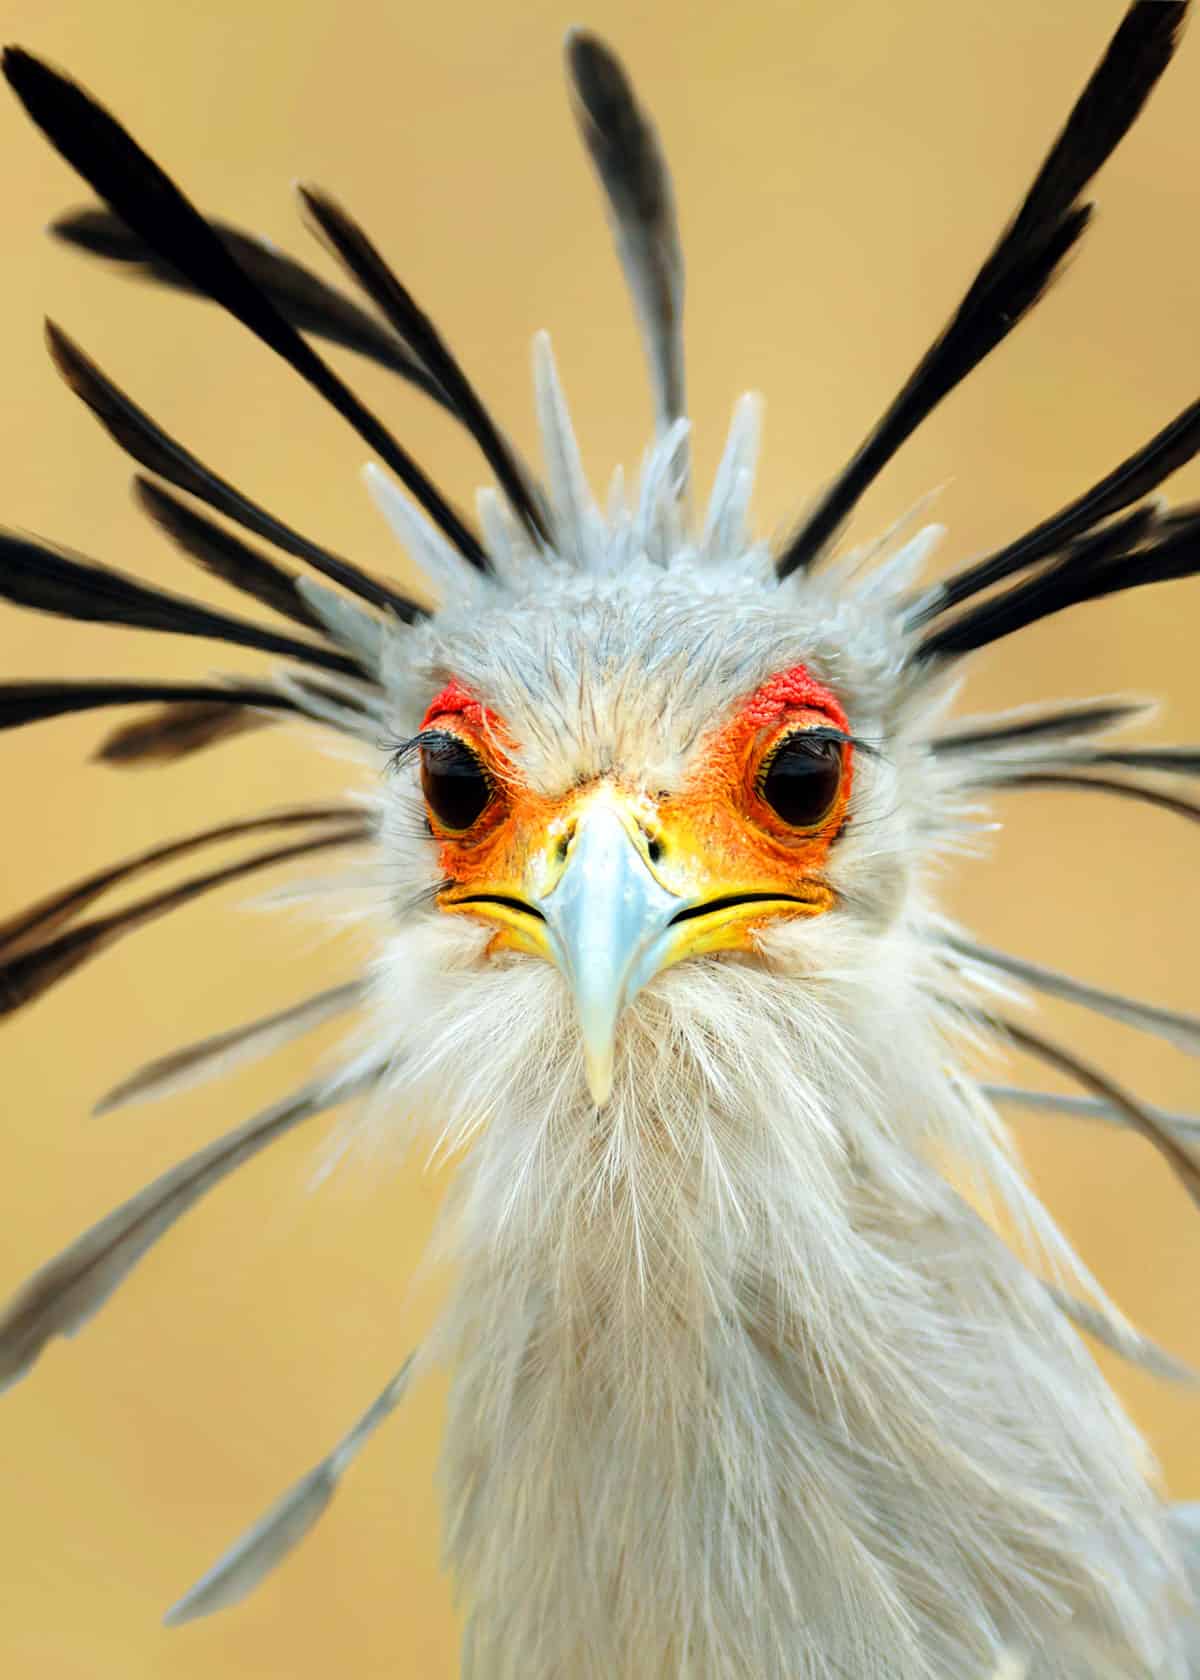 Bird with eyelashes